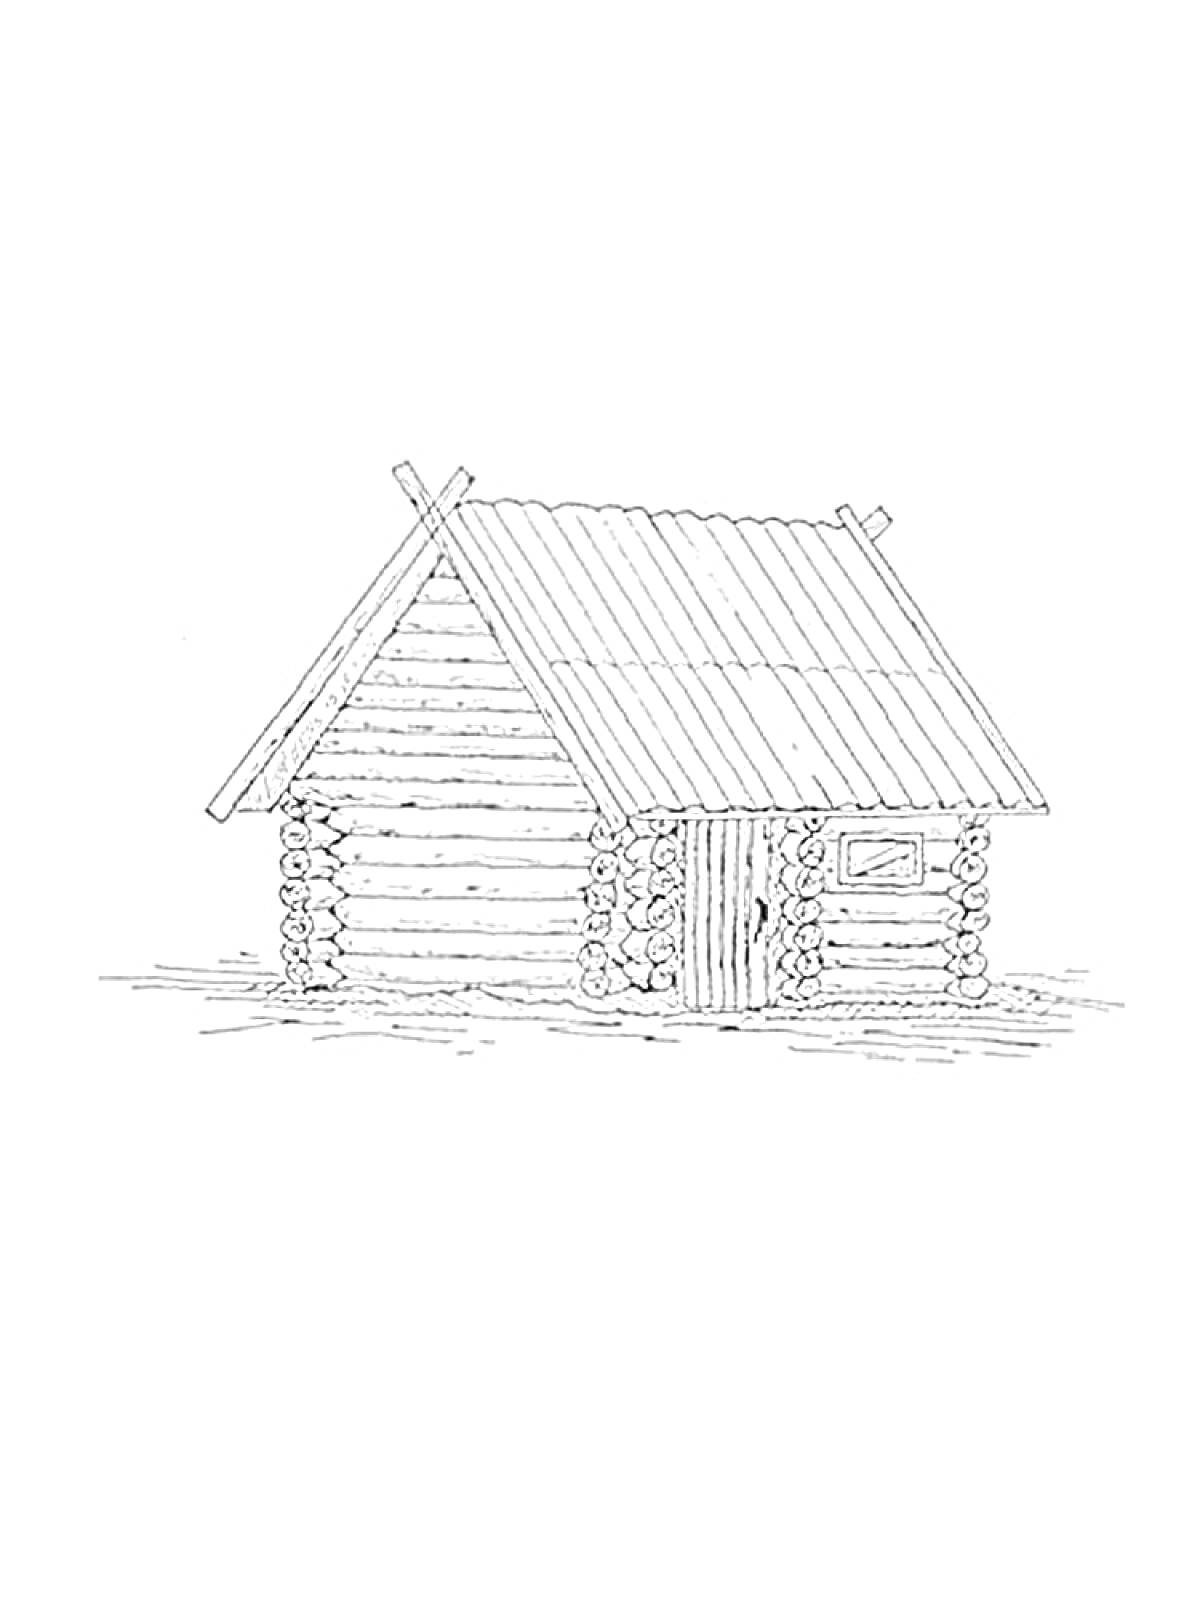 Деревянная баня с бревенчатым срубом, наклонной крышей, дверью и окном